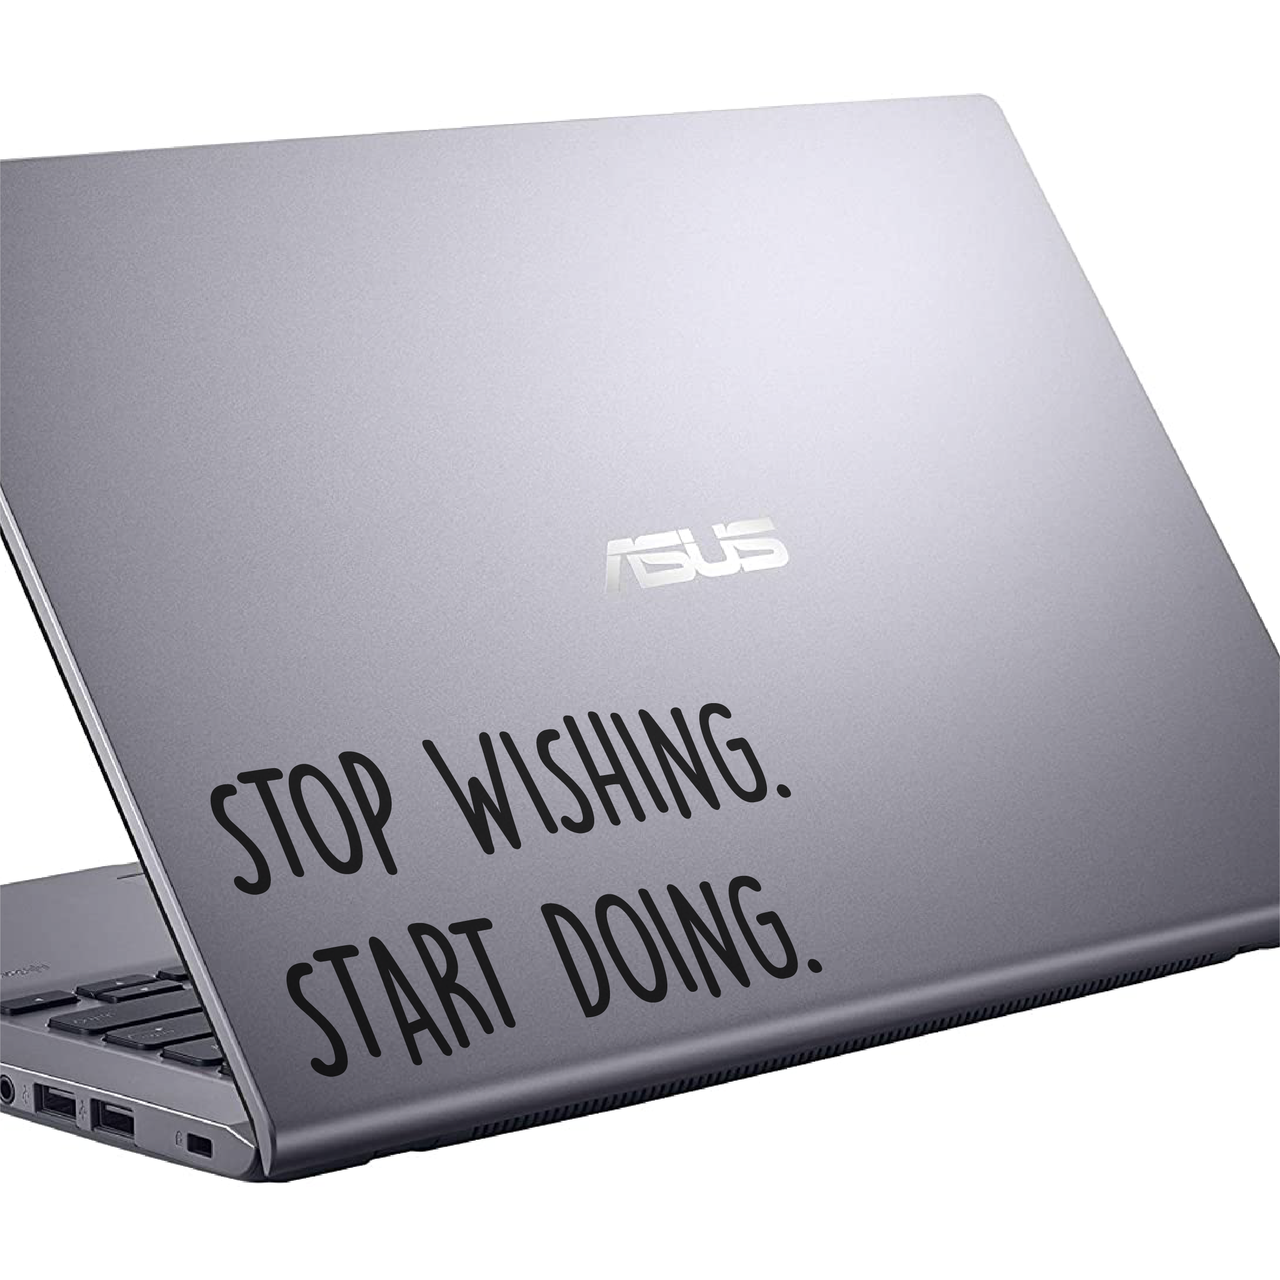 Stop Wishing Start Doing Laptop Decal